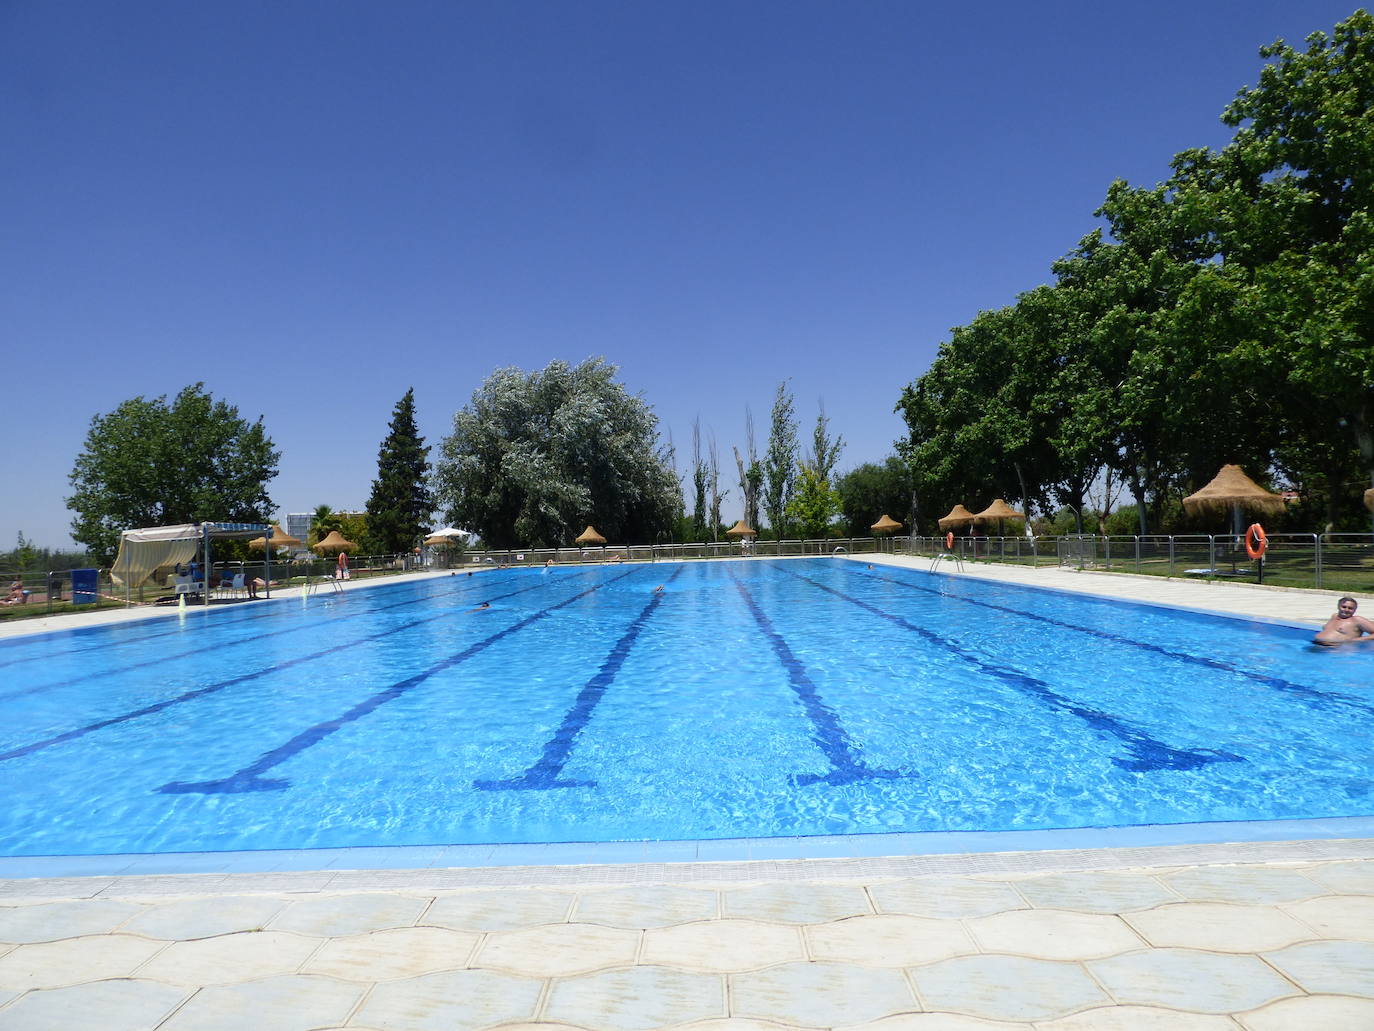 El Ayuntamiento oferta dos plazas de ATS/DUE y dos de Técnicos Administrativos para la piscina municipal